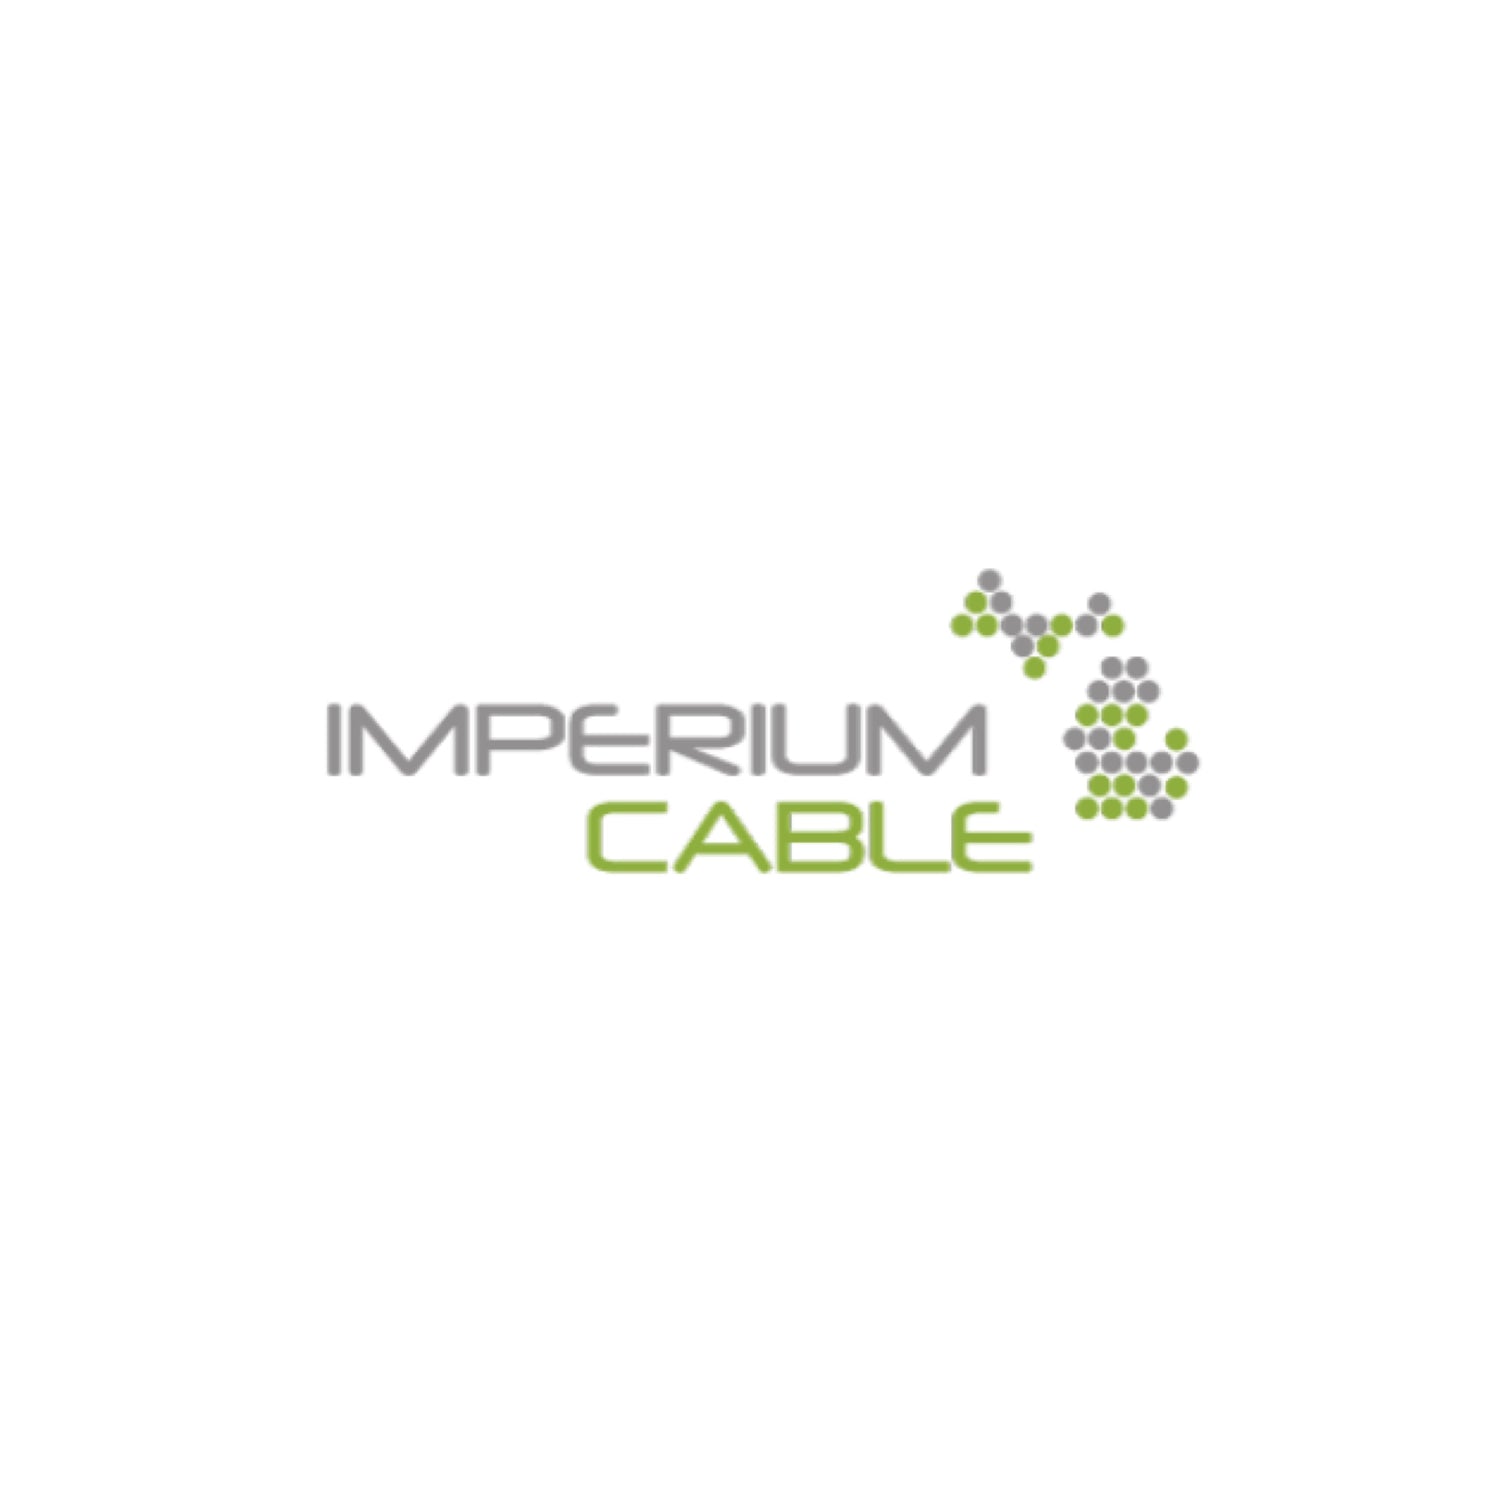 IMPERIUM CABLE LLC